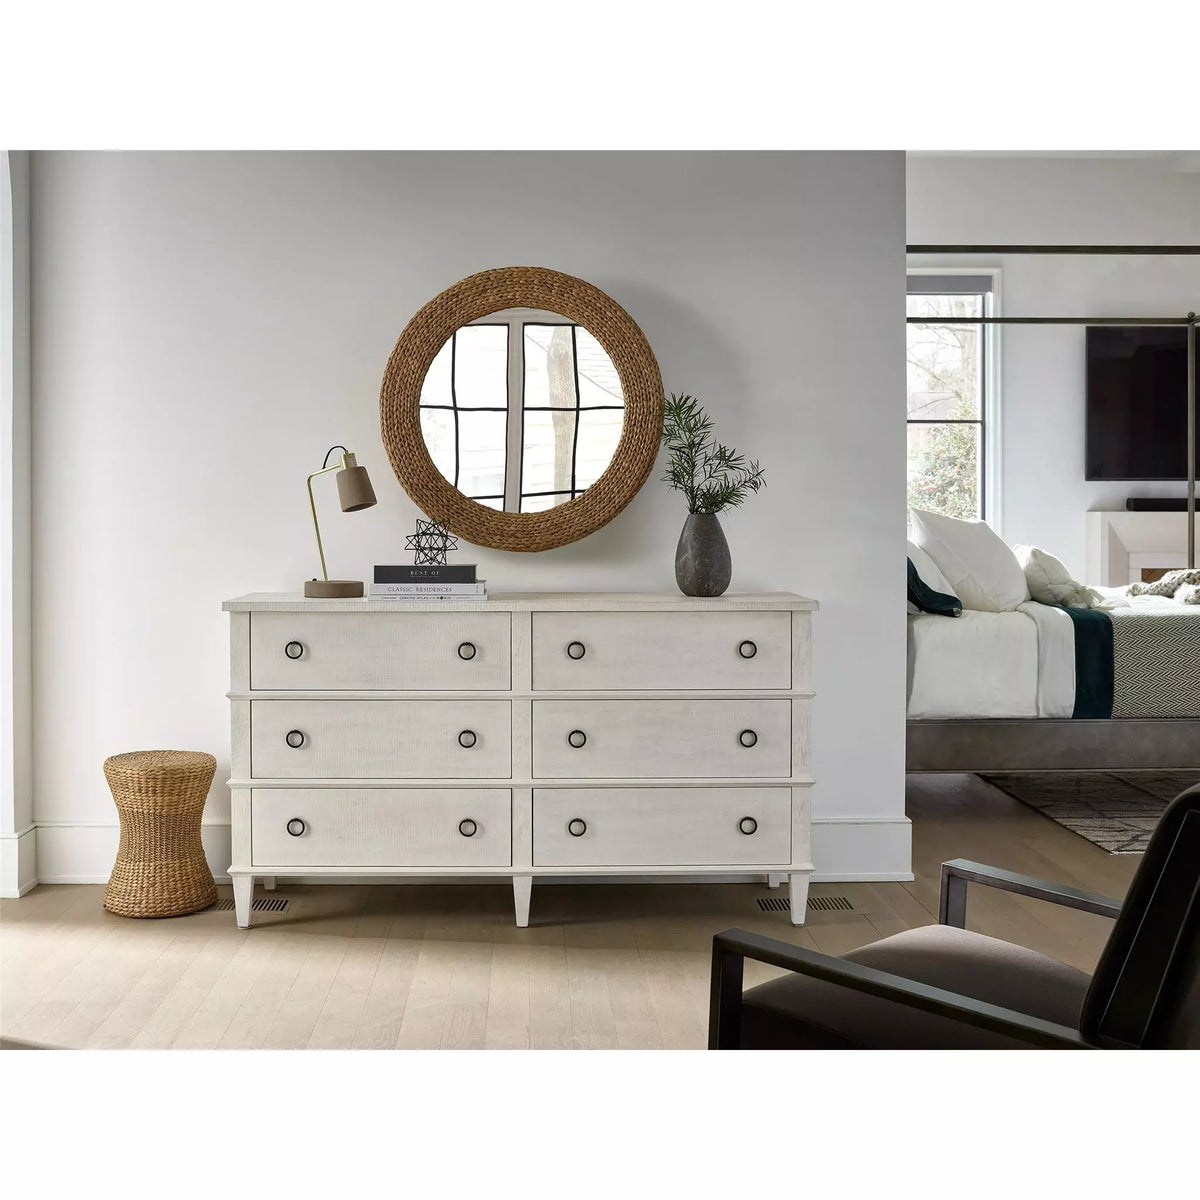 Fallon Mirror - Be Bold Furniture